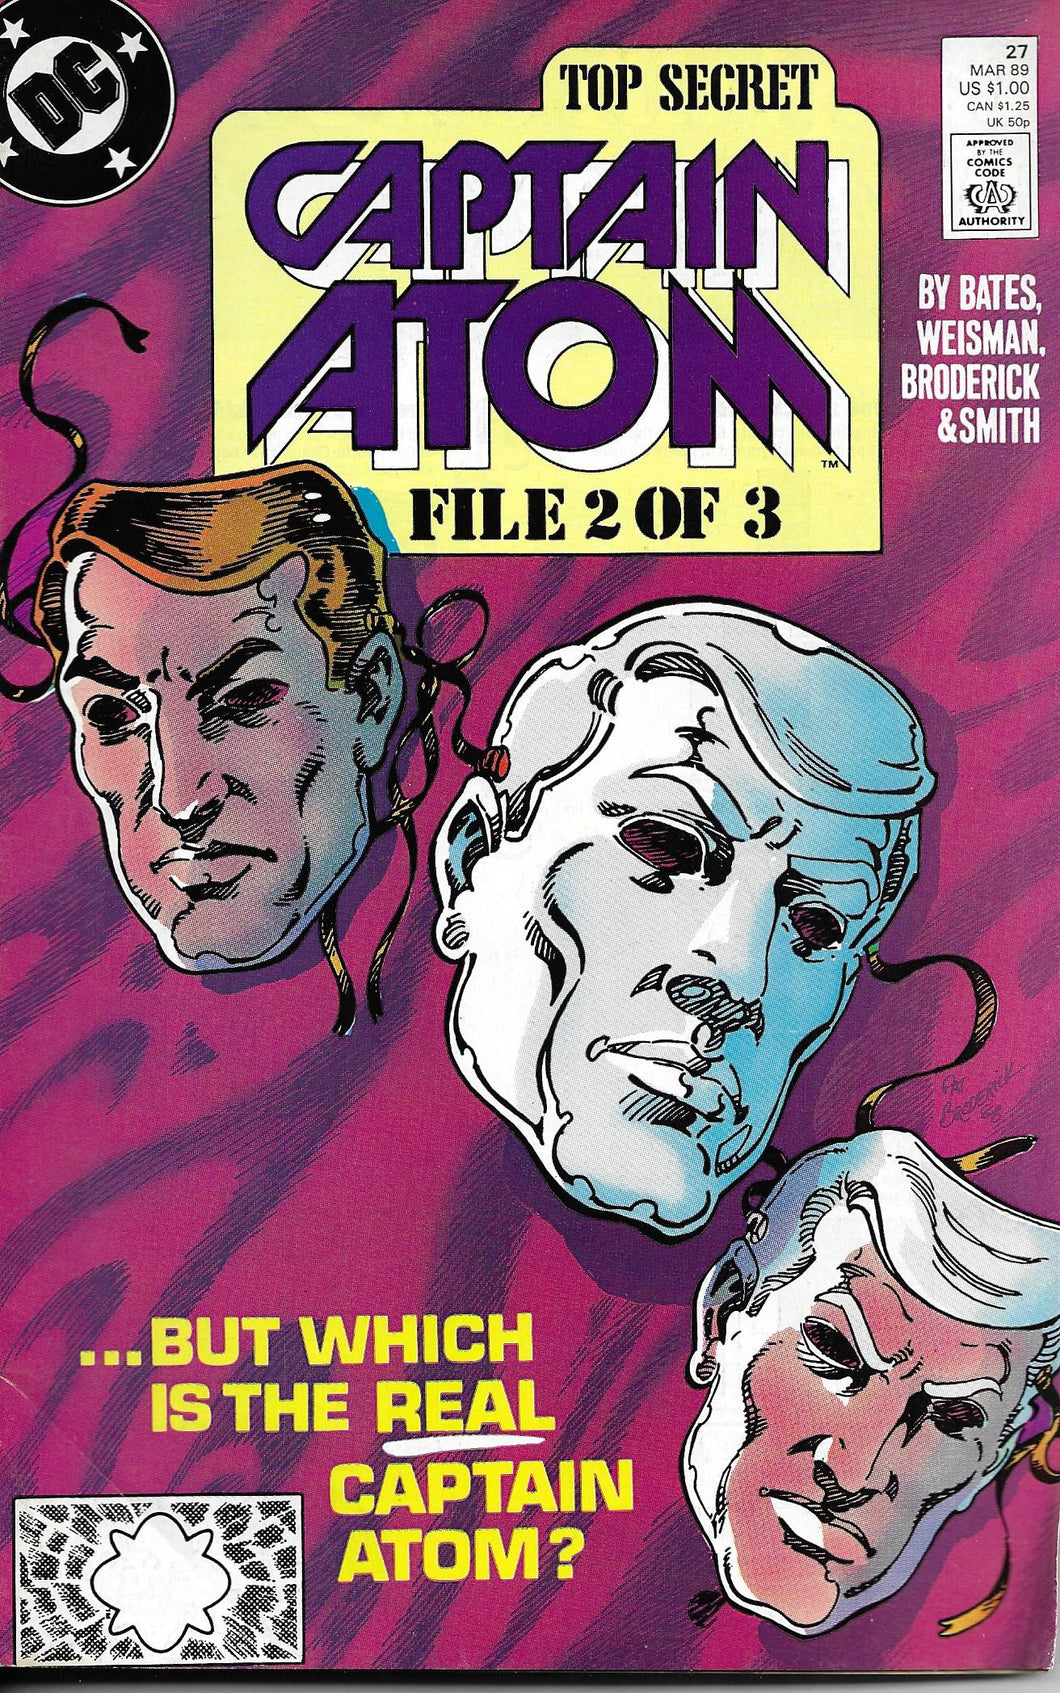 Captain Atom, DC Comics, File 2 of 3, No27, September 1987